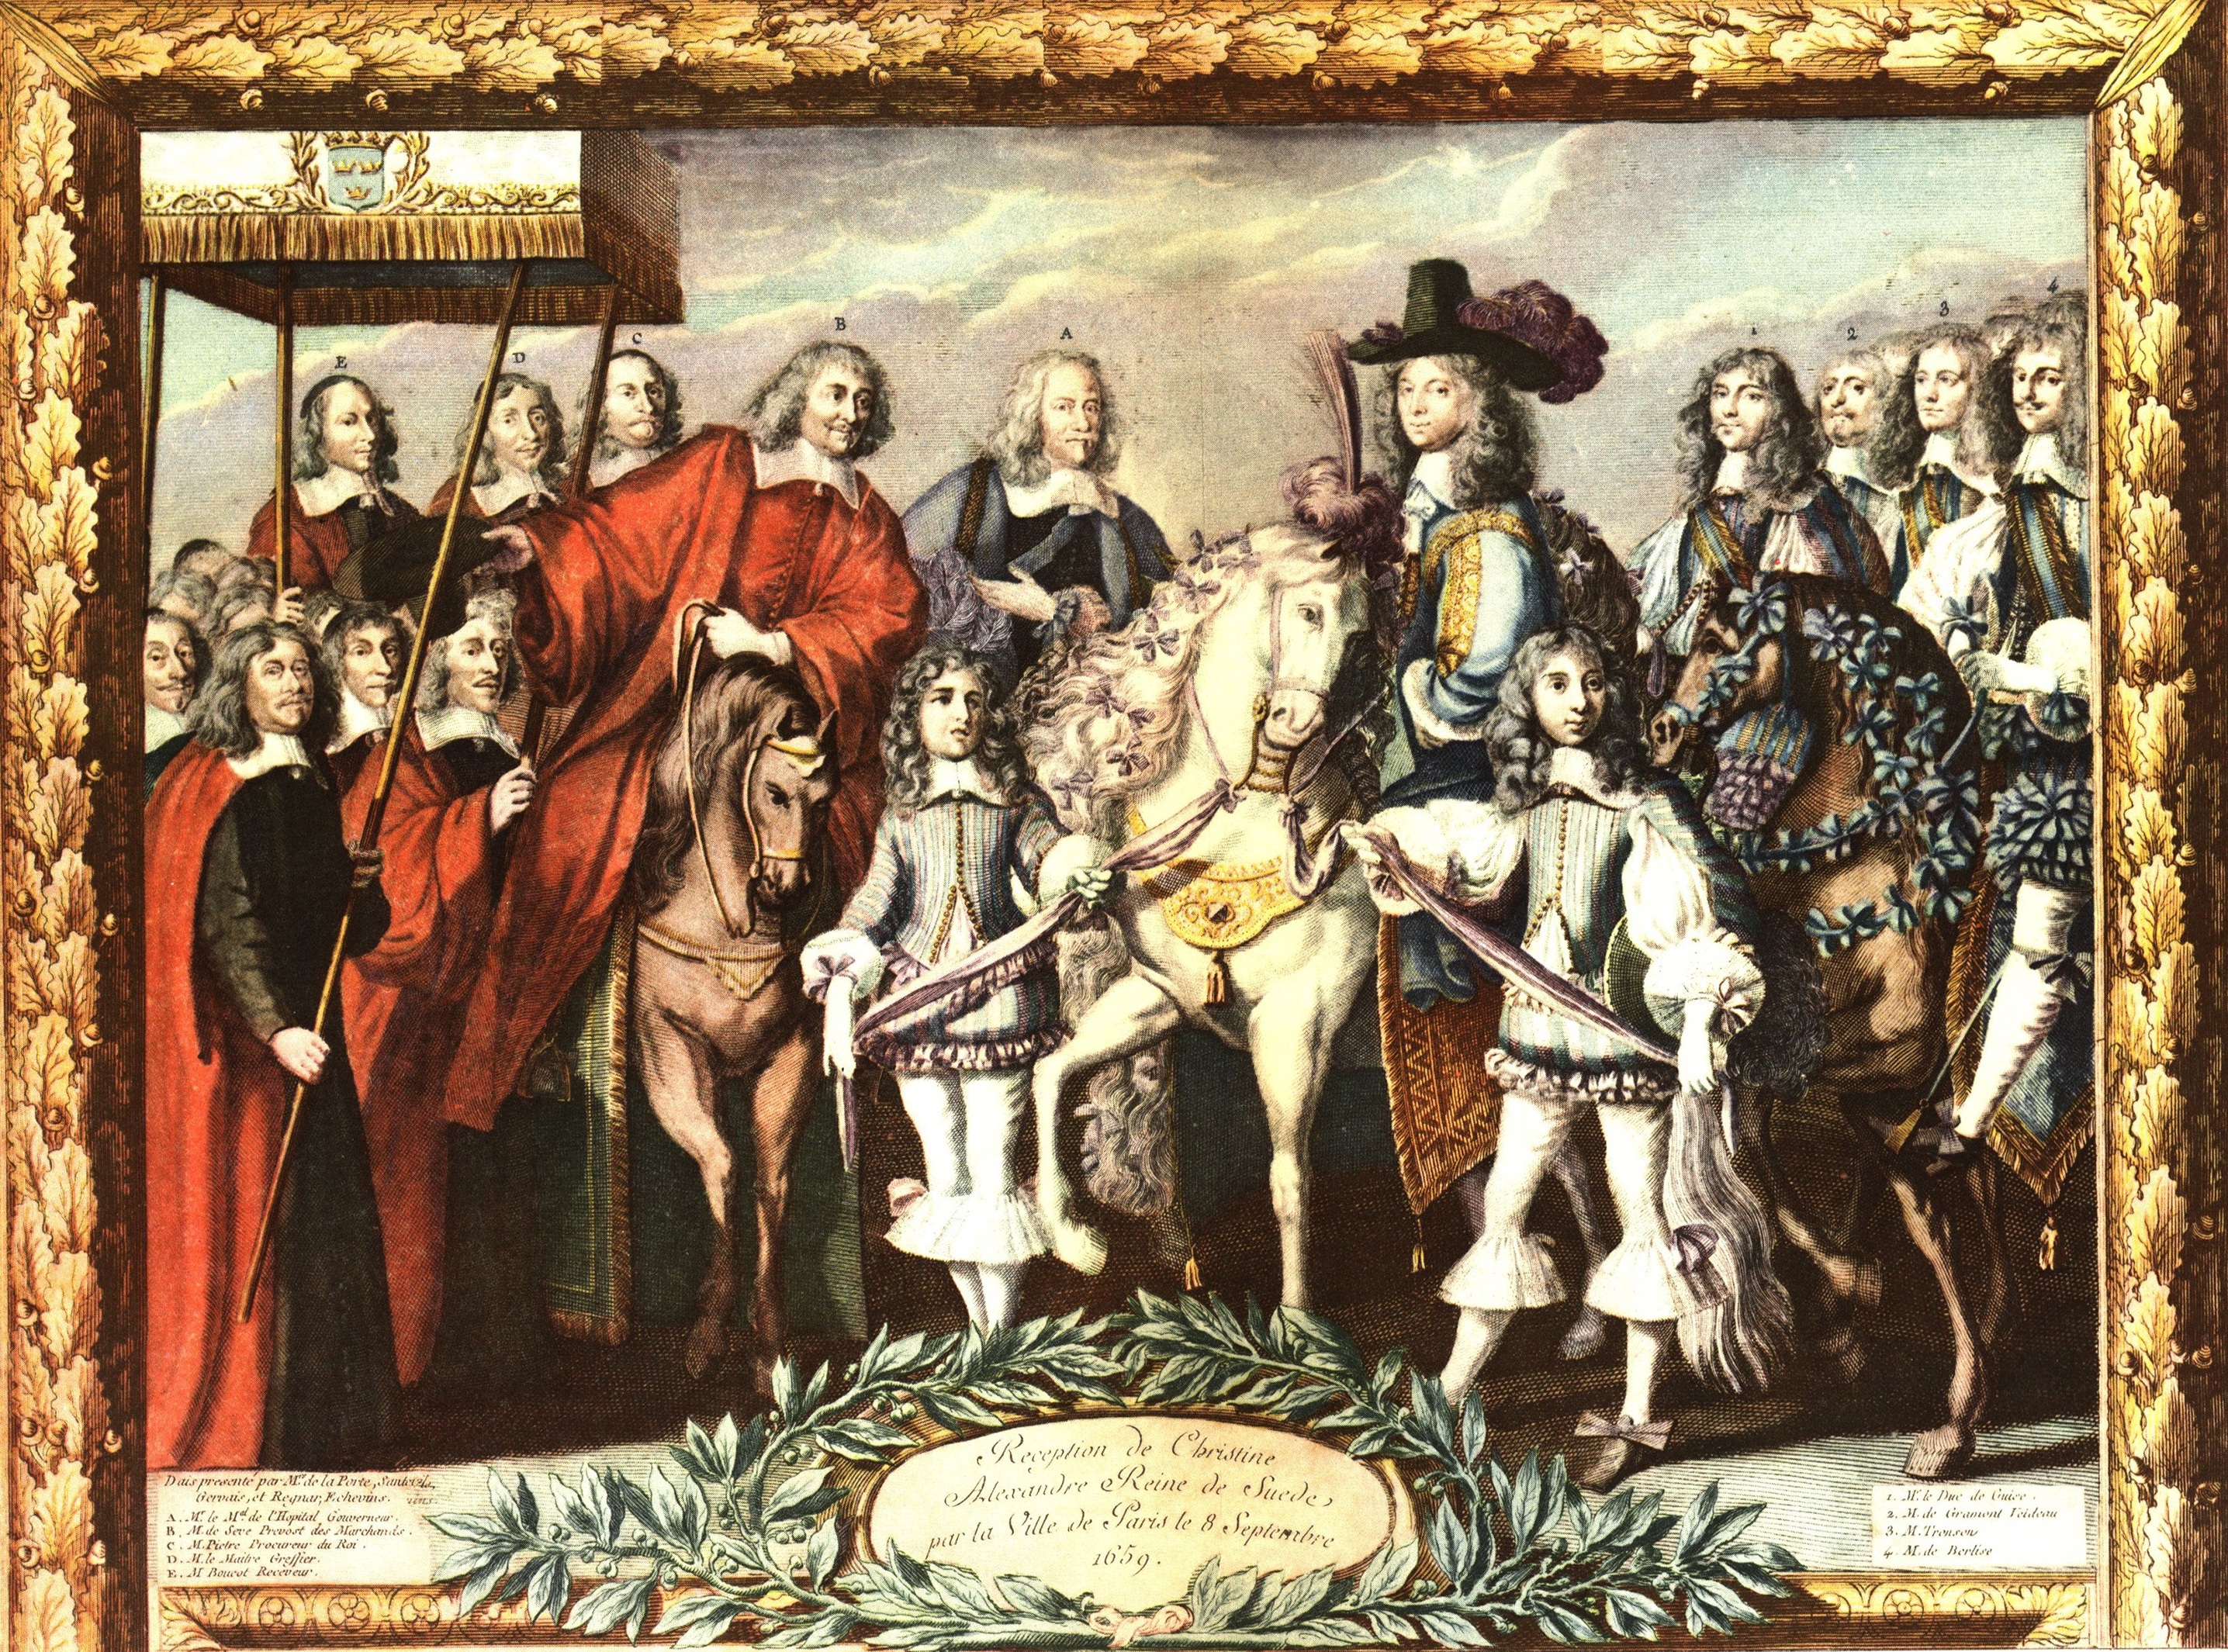 Przyjęcie Krystyny królowej Szwecji w Paryżu w 1659 r.